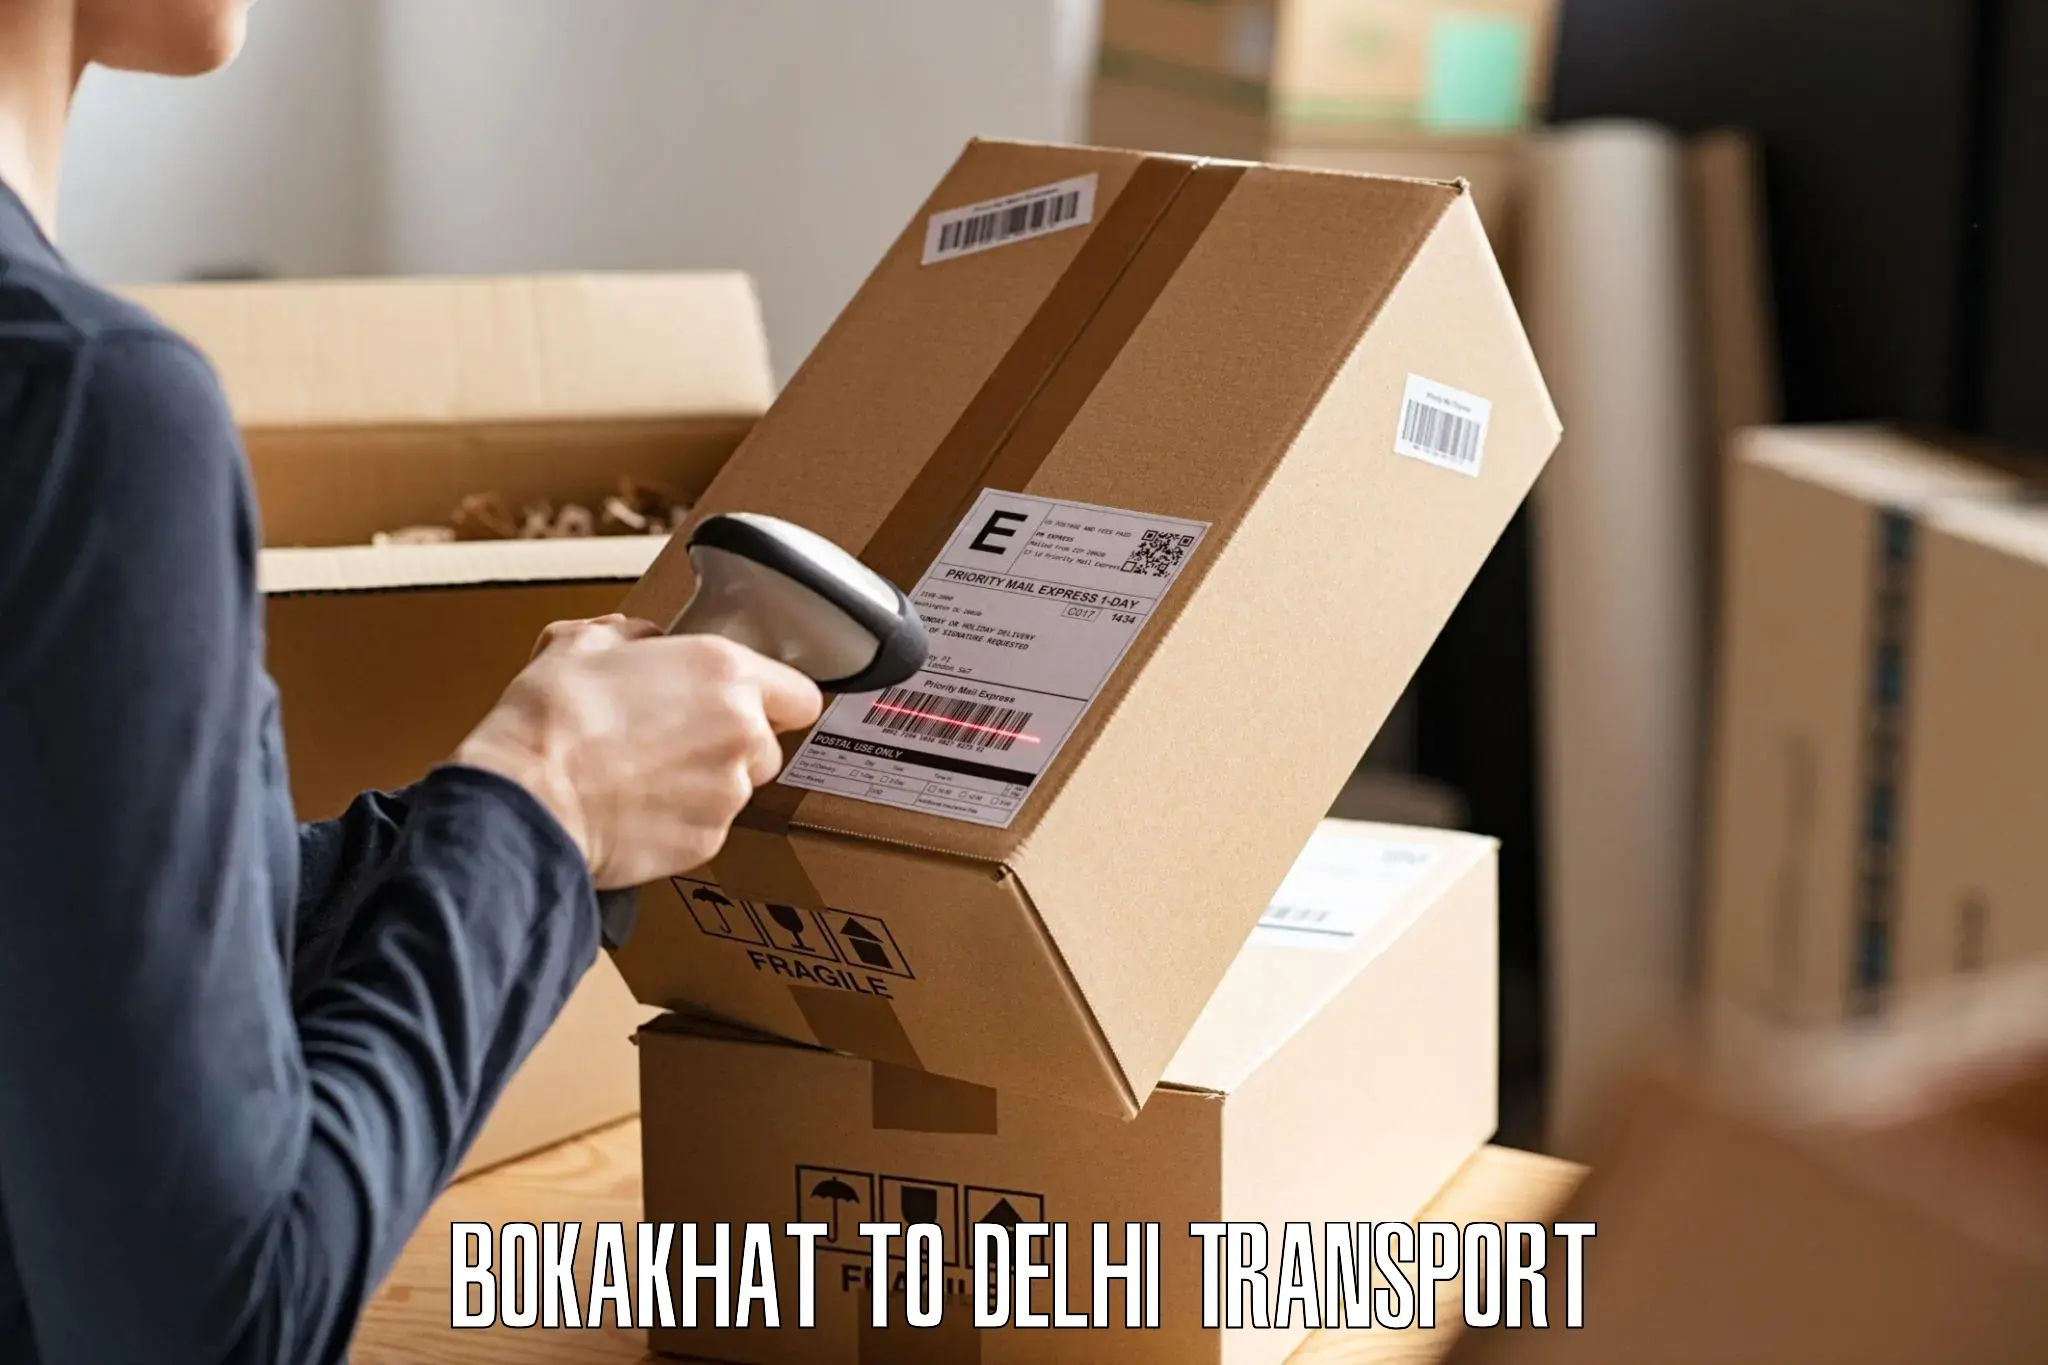 Truck transport companies in India Bokakhat to Kalkaji